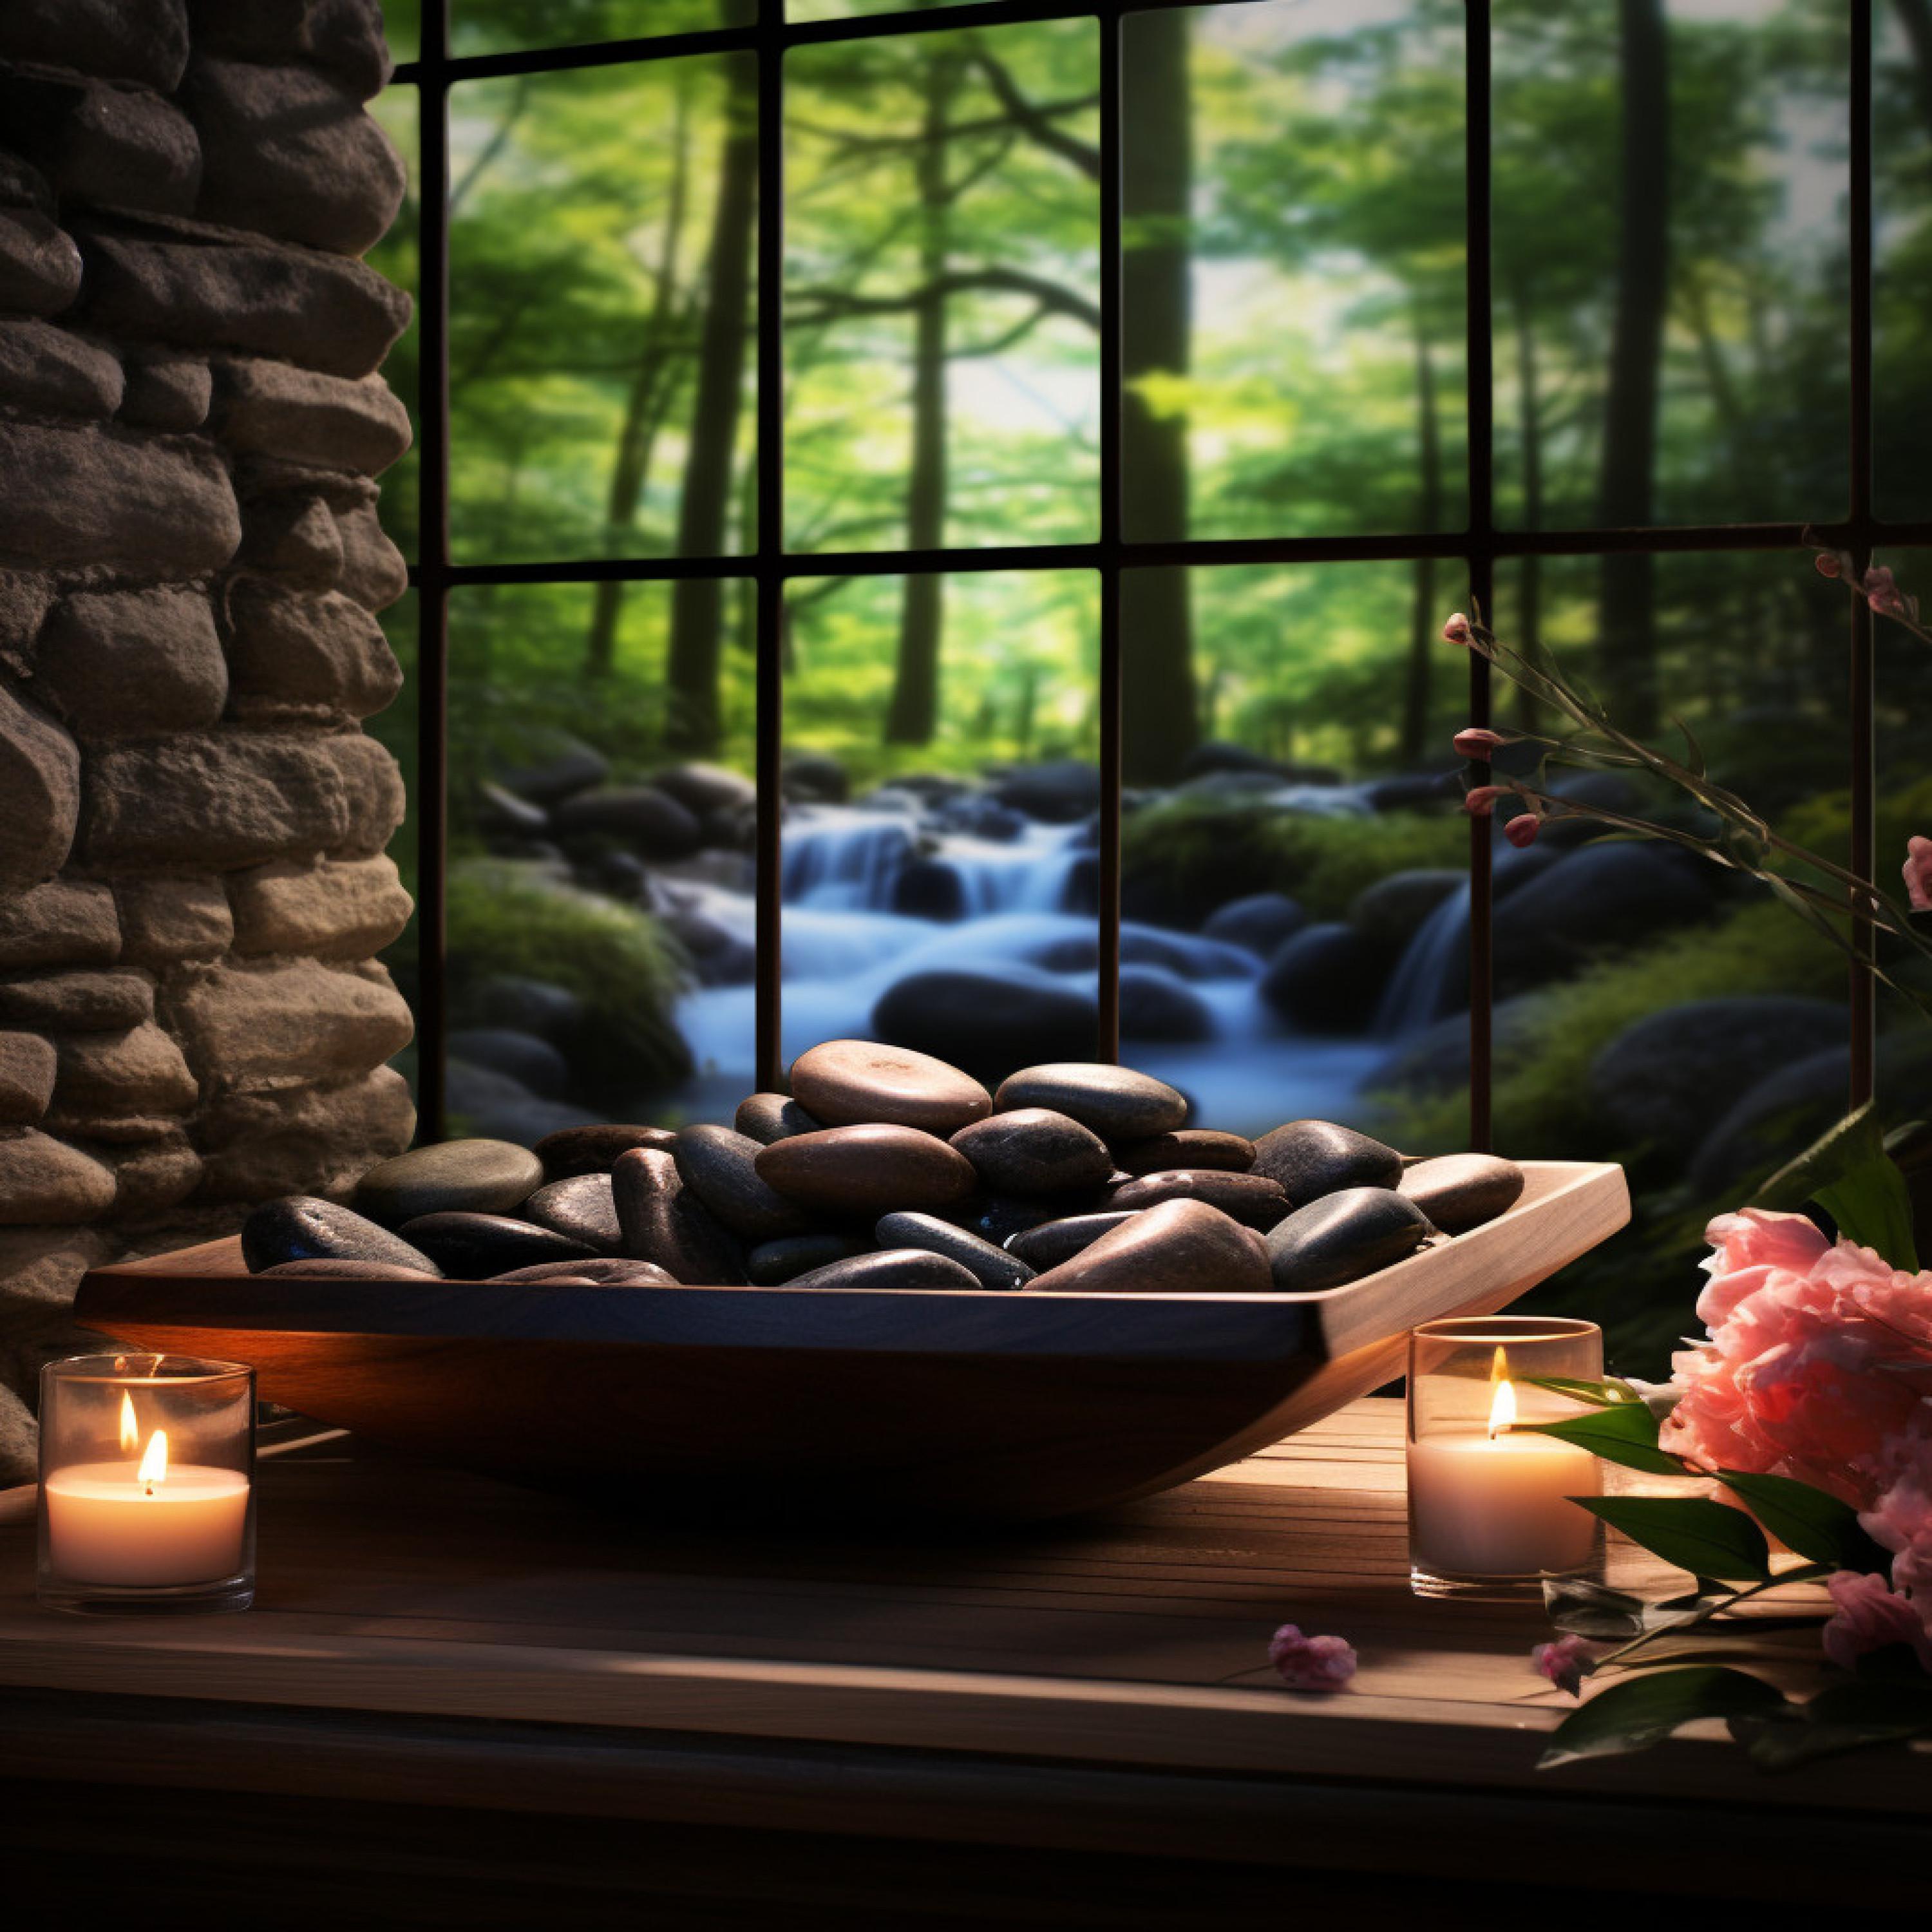 Pure Spa Massage Music - Gentle Water Massage Melody